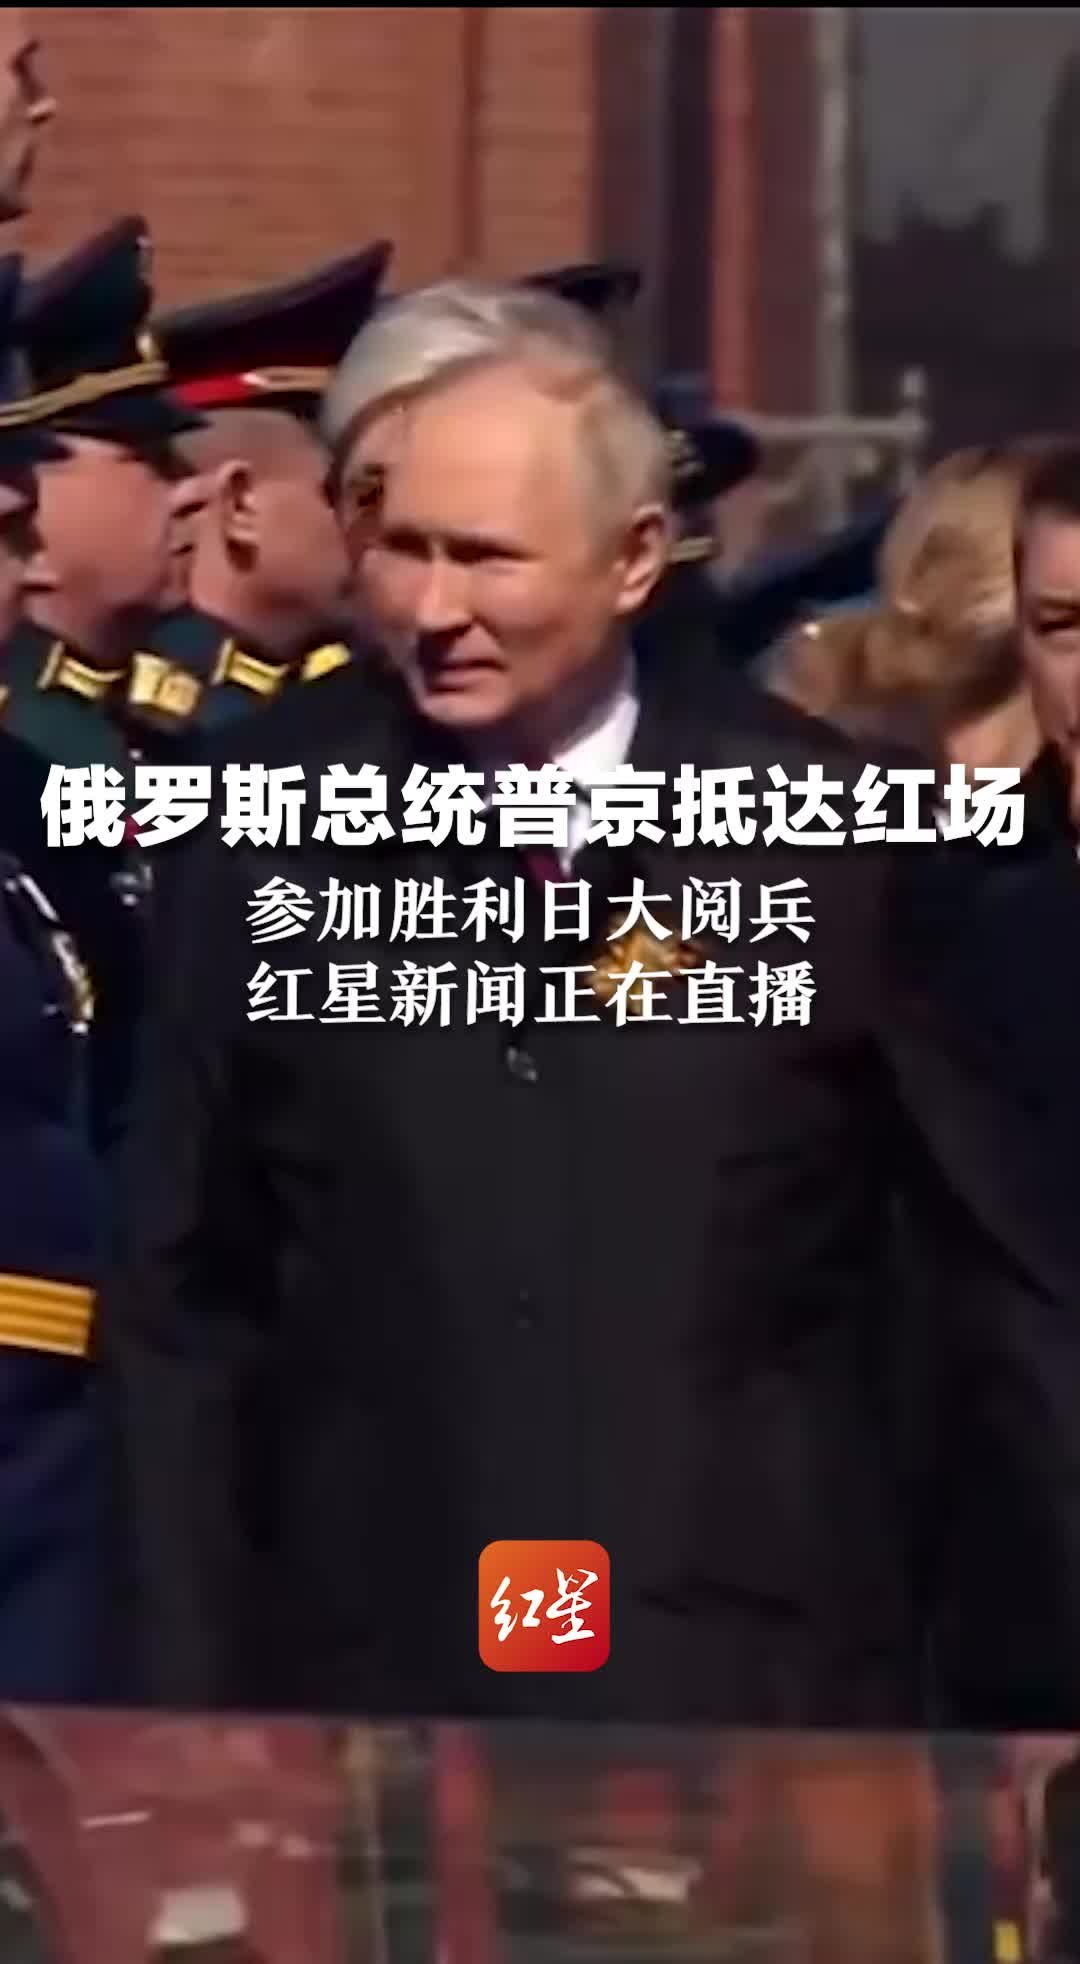 俄罗斯总统普京抵达北京 - 中国日报网